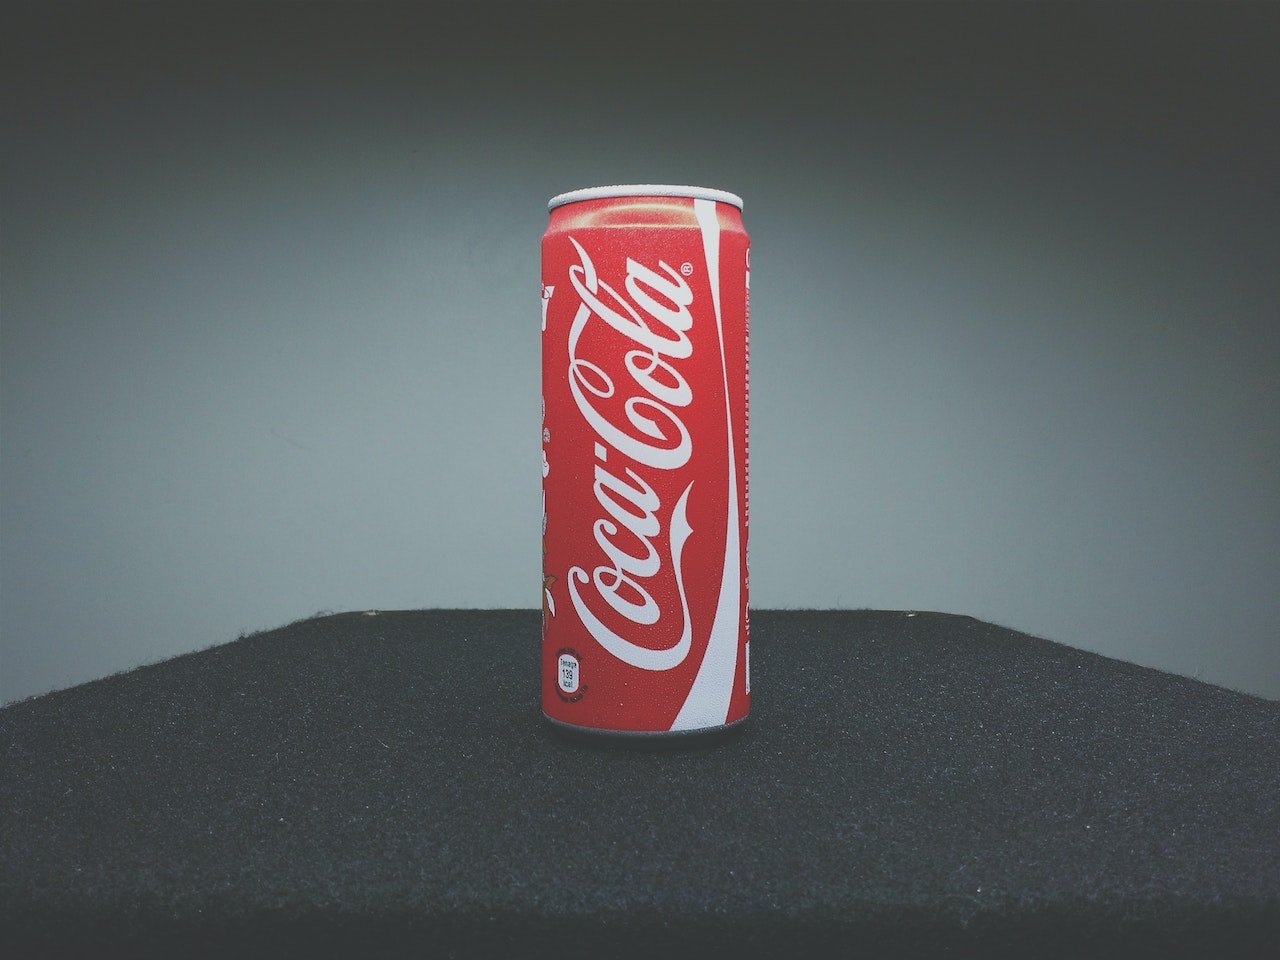 An Image of a Bottle of Coke.